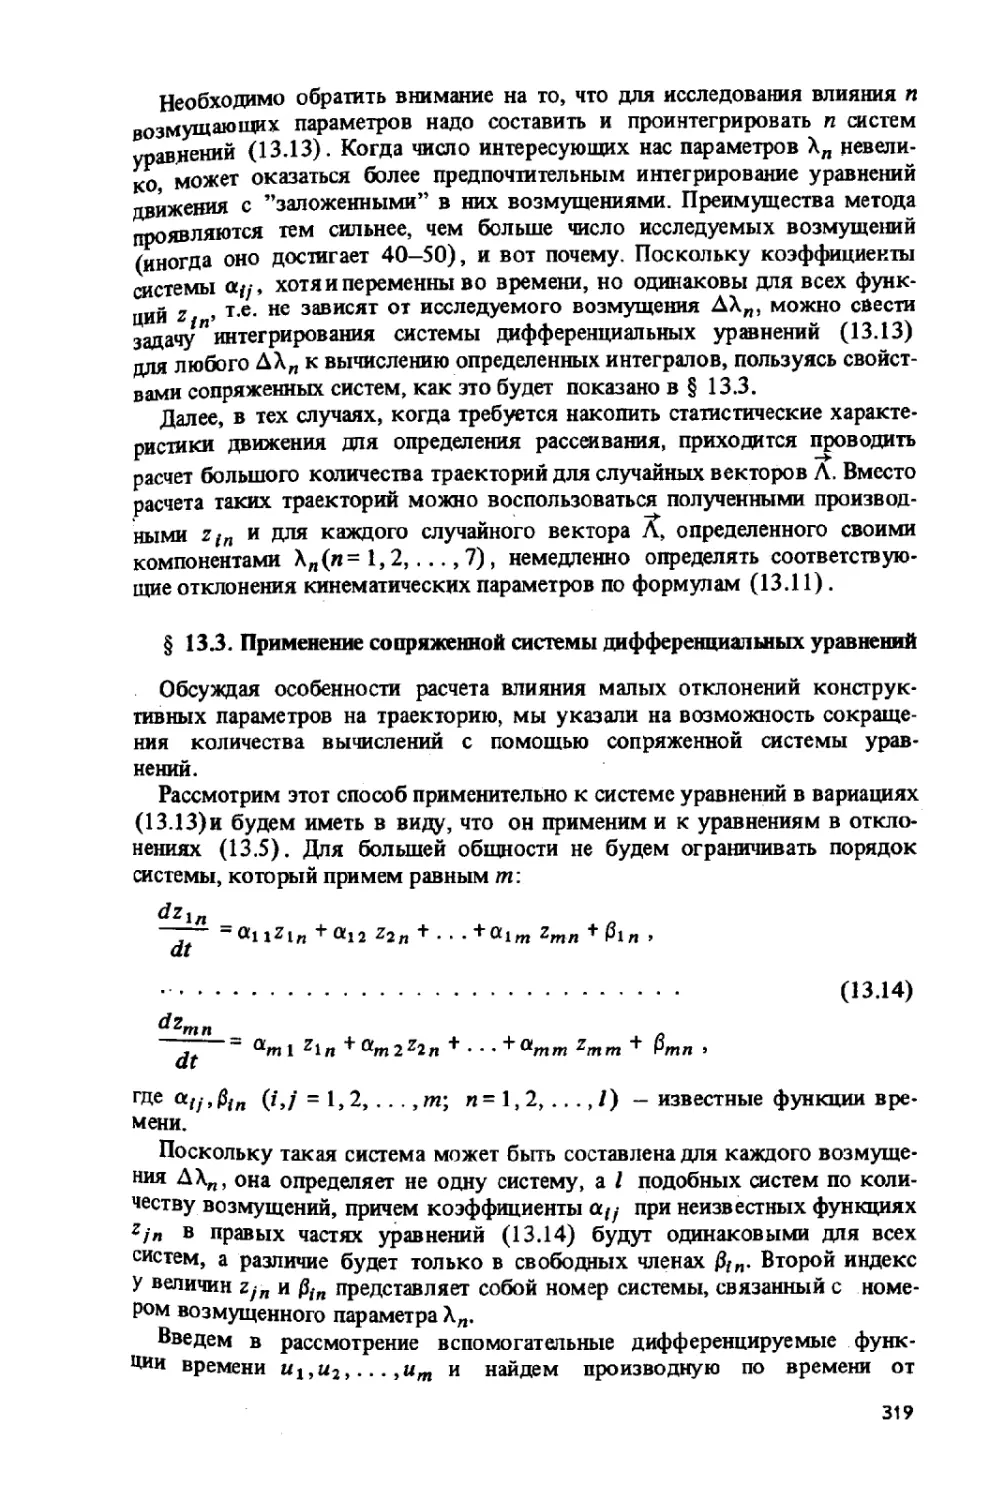 13.3.Применение сопряженной системы дифференциальных уравнений.